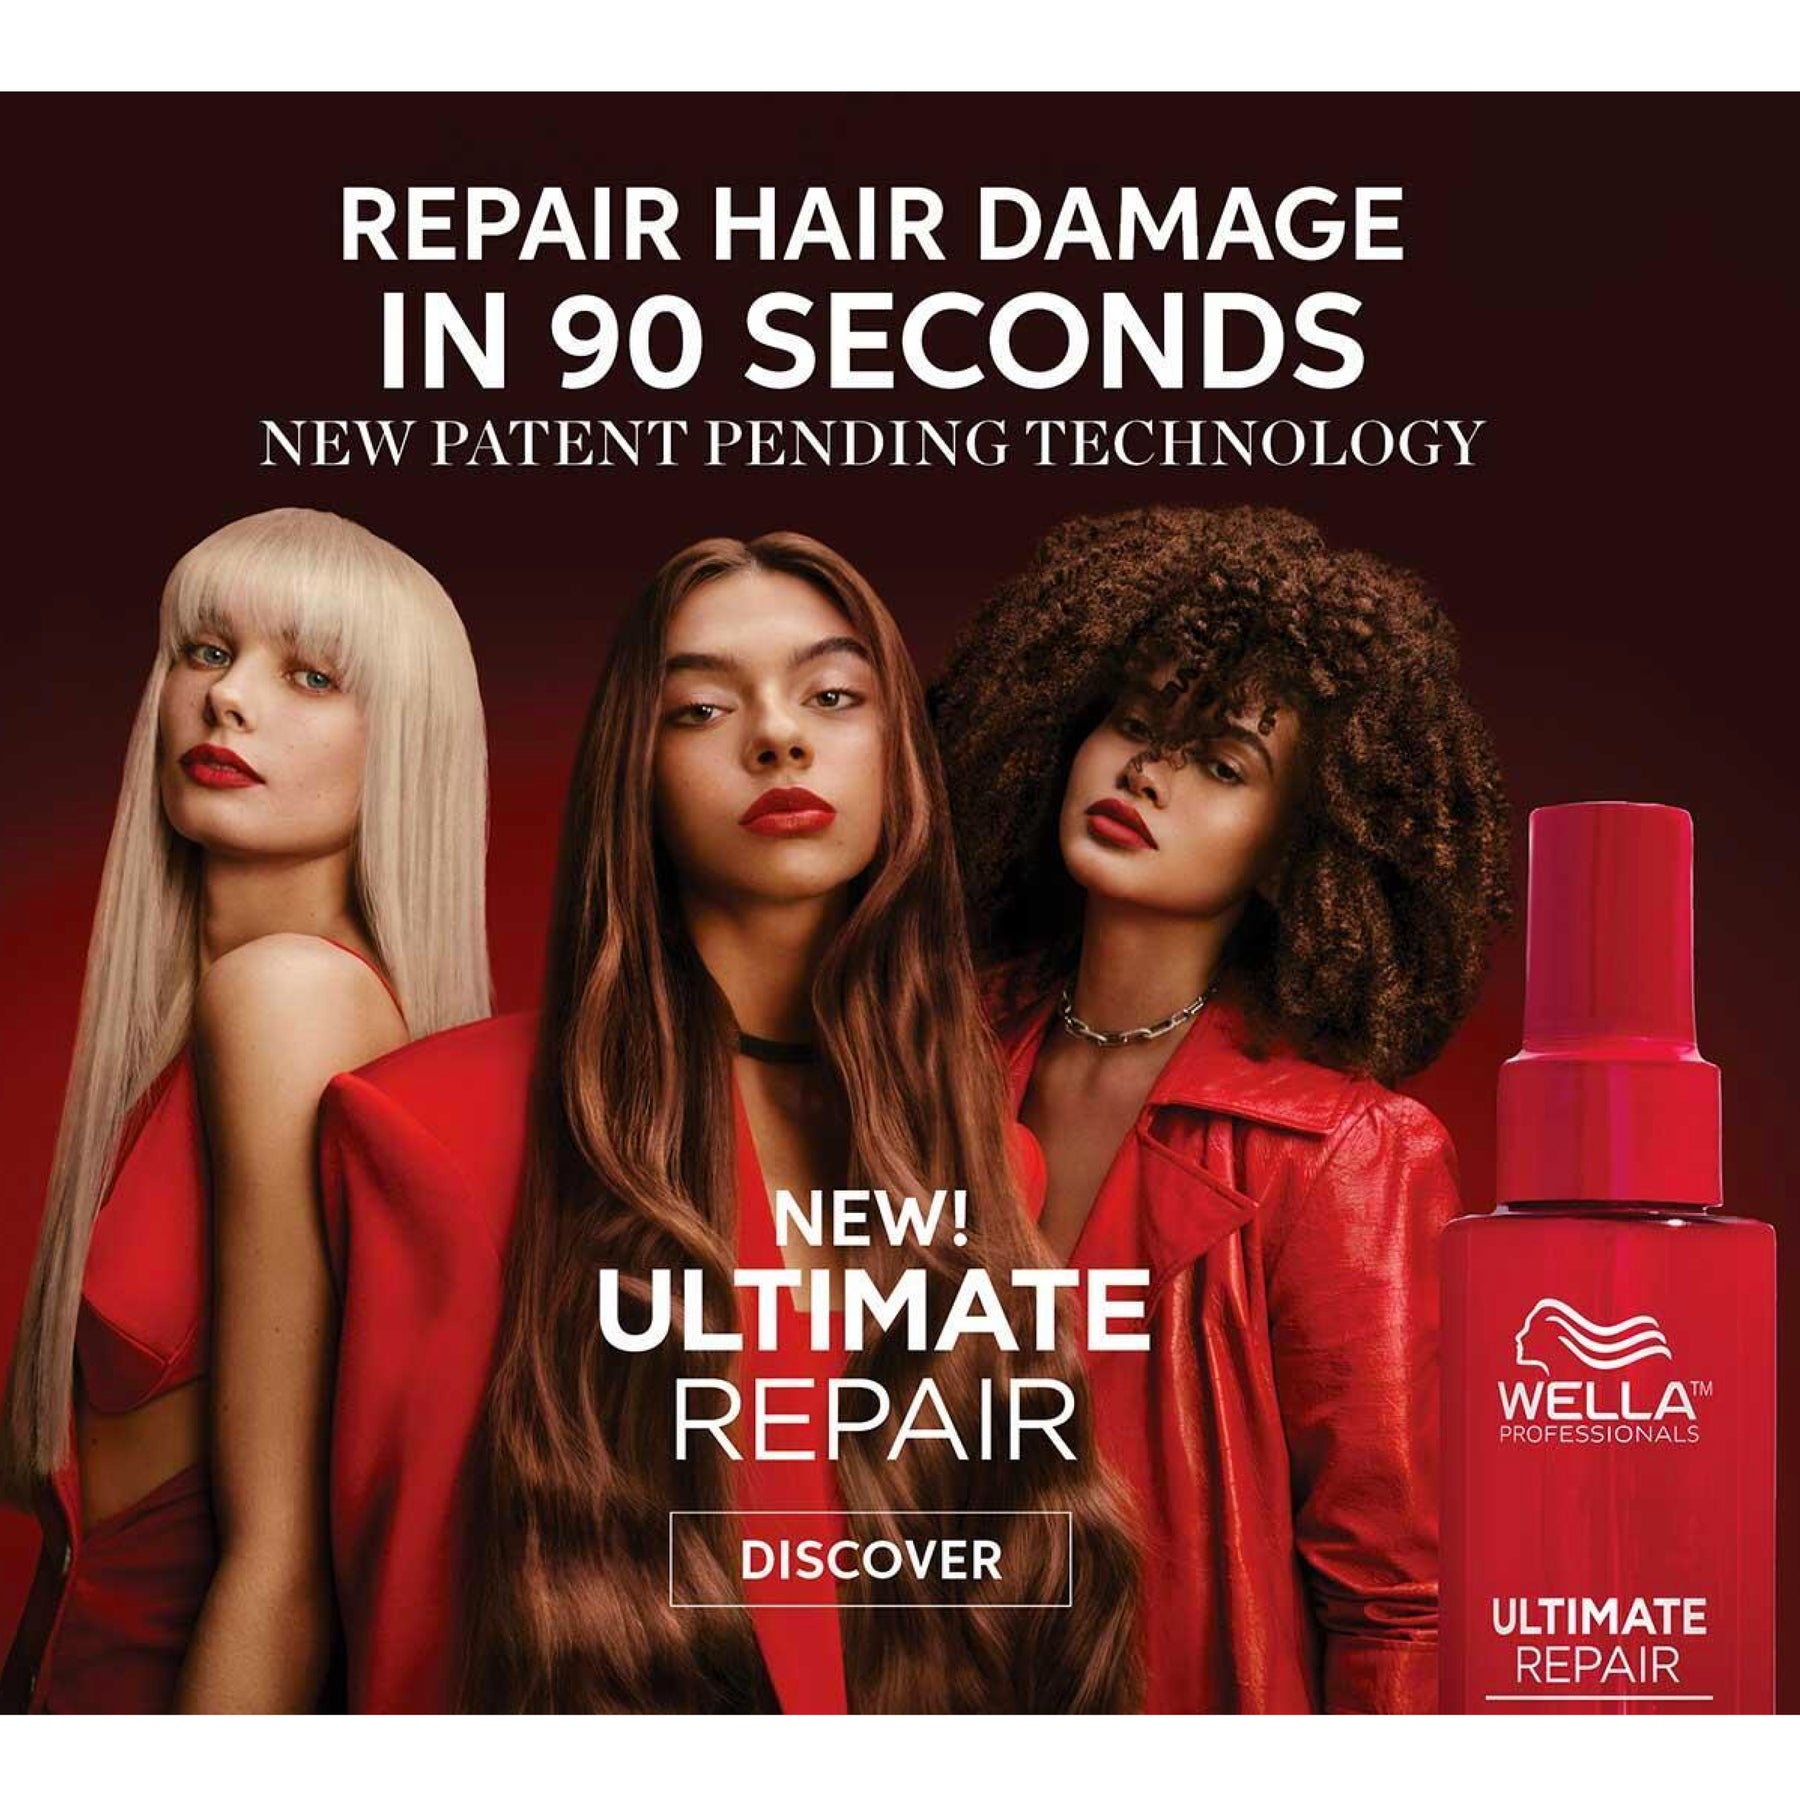 Shop Wella Ultimate Repair to repair your hair in 90 seconds